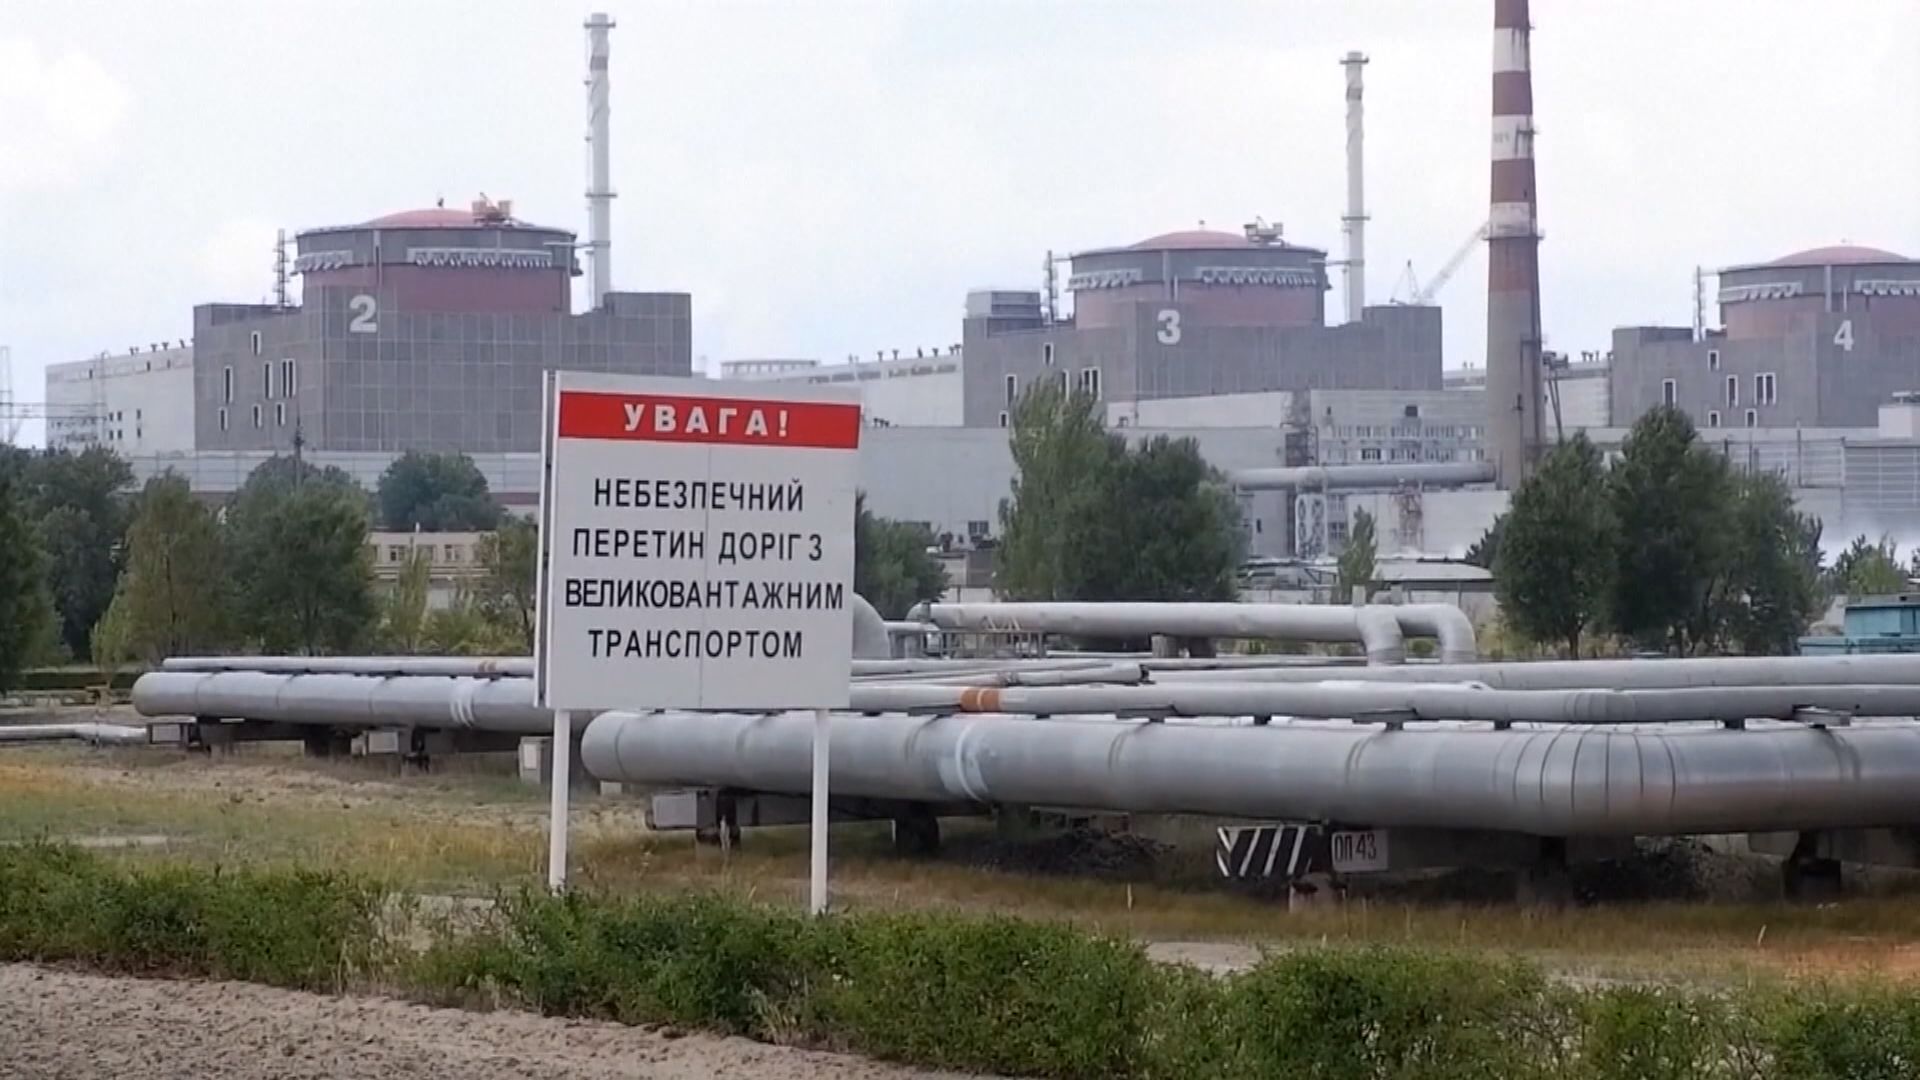 國際原子能機構專家團料周四抵扎波羅熱核電廠視察